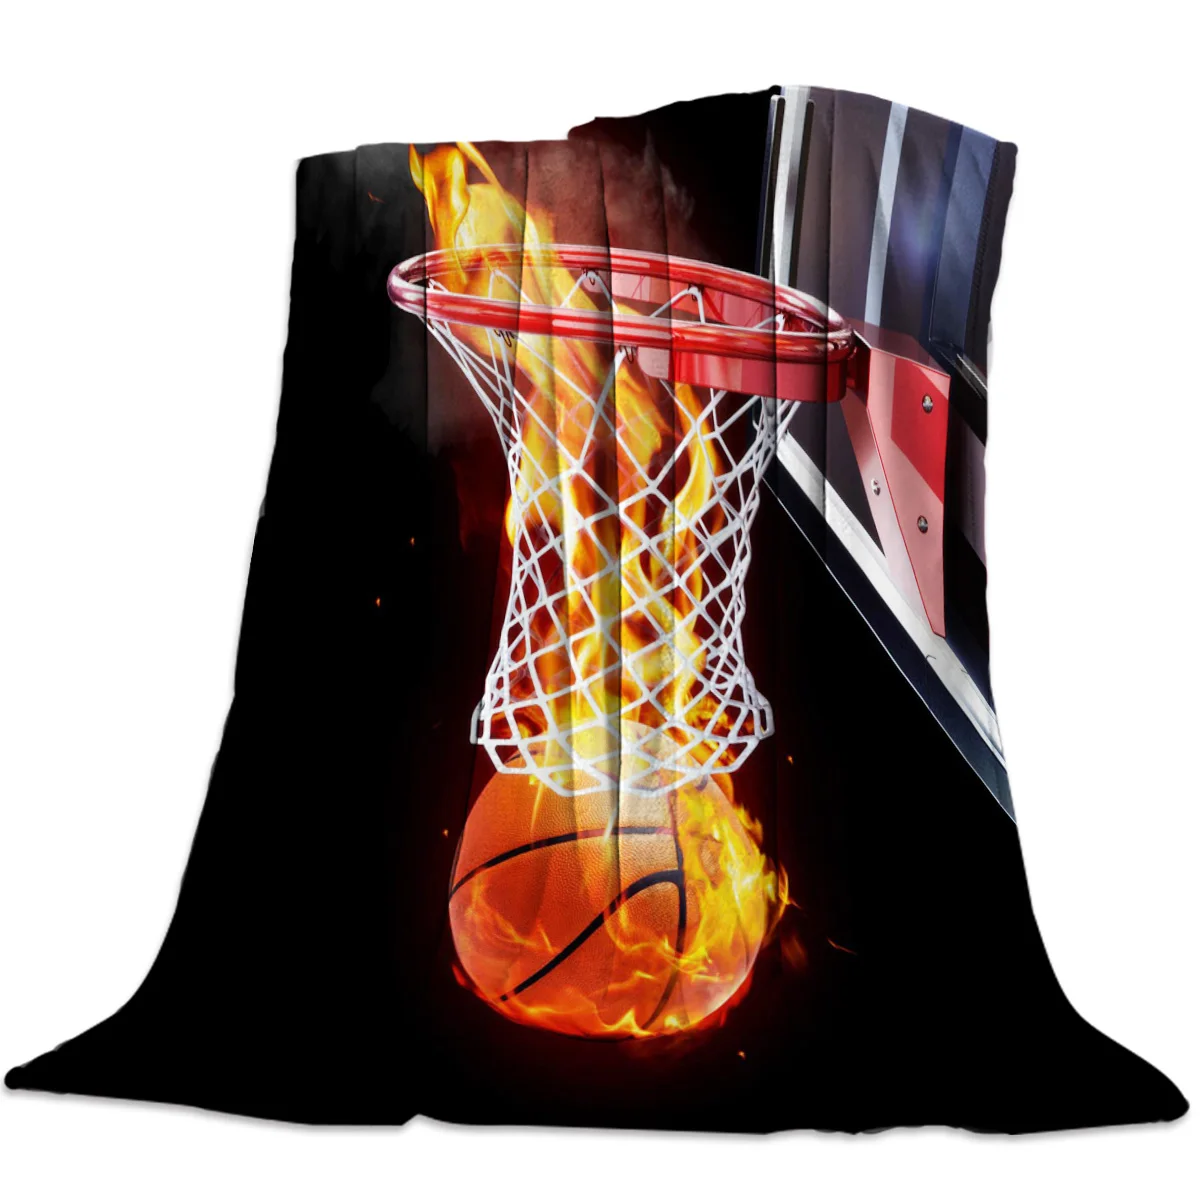 

Фланелевое покрывало с рисунком баскетбола, легкий супермягкий уютный спортивный одеяло с рисунком пламени, для взрослых и детей, для путешествий и кемпинга